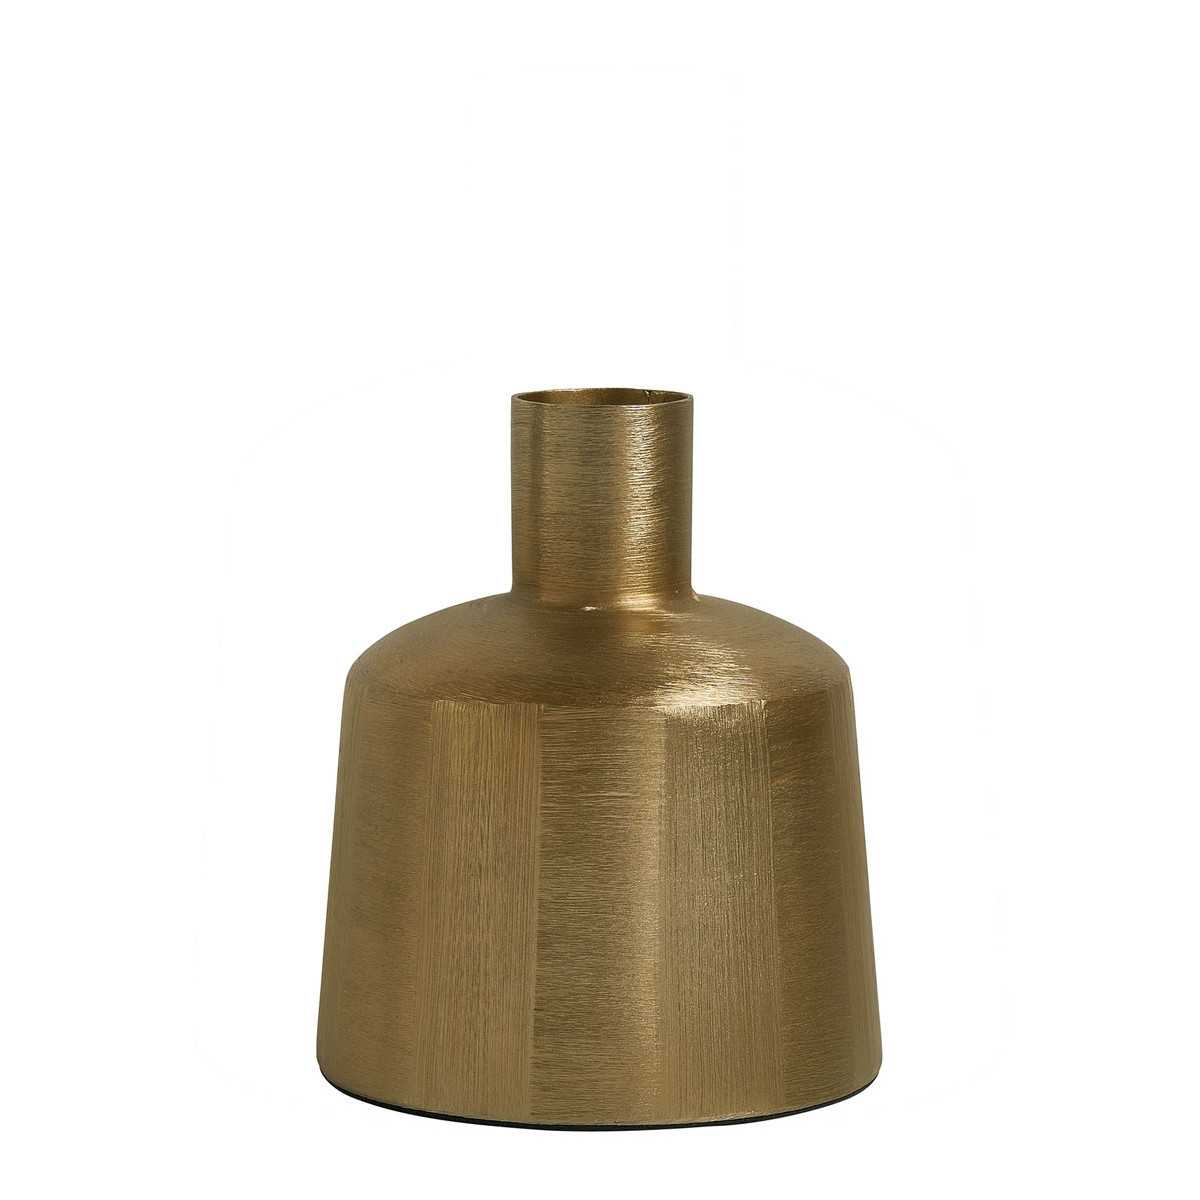 INTERIEUR- DECORATION|Vase ELIAS en métal doré - Petit modèle - H. 22 cm|BLANC D'IVOIRE|Vases|